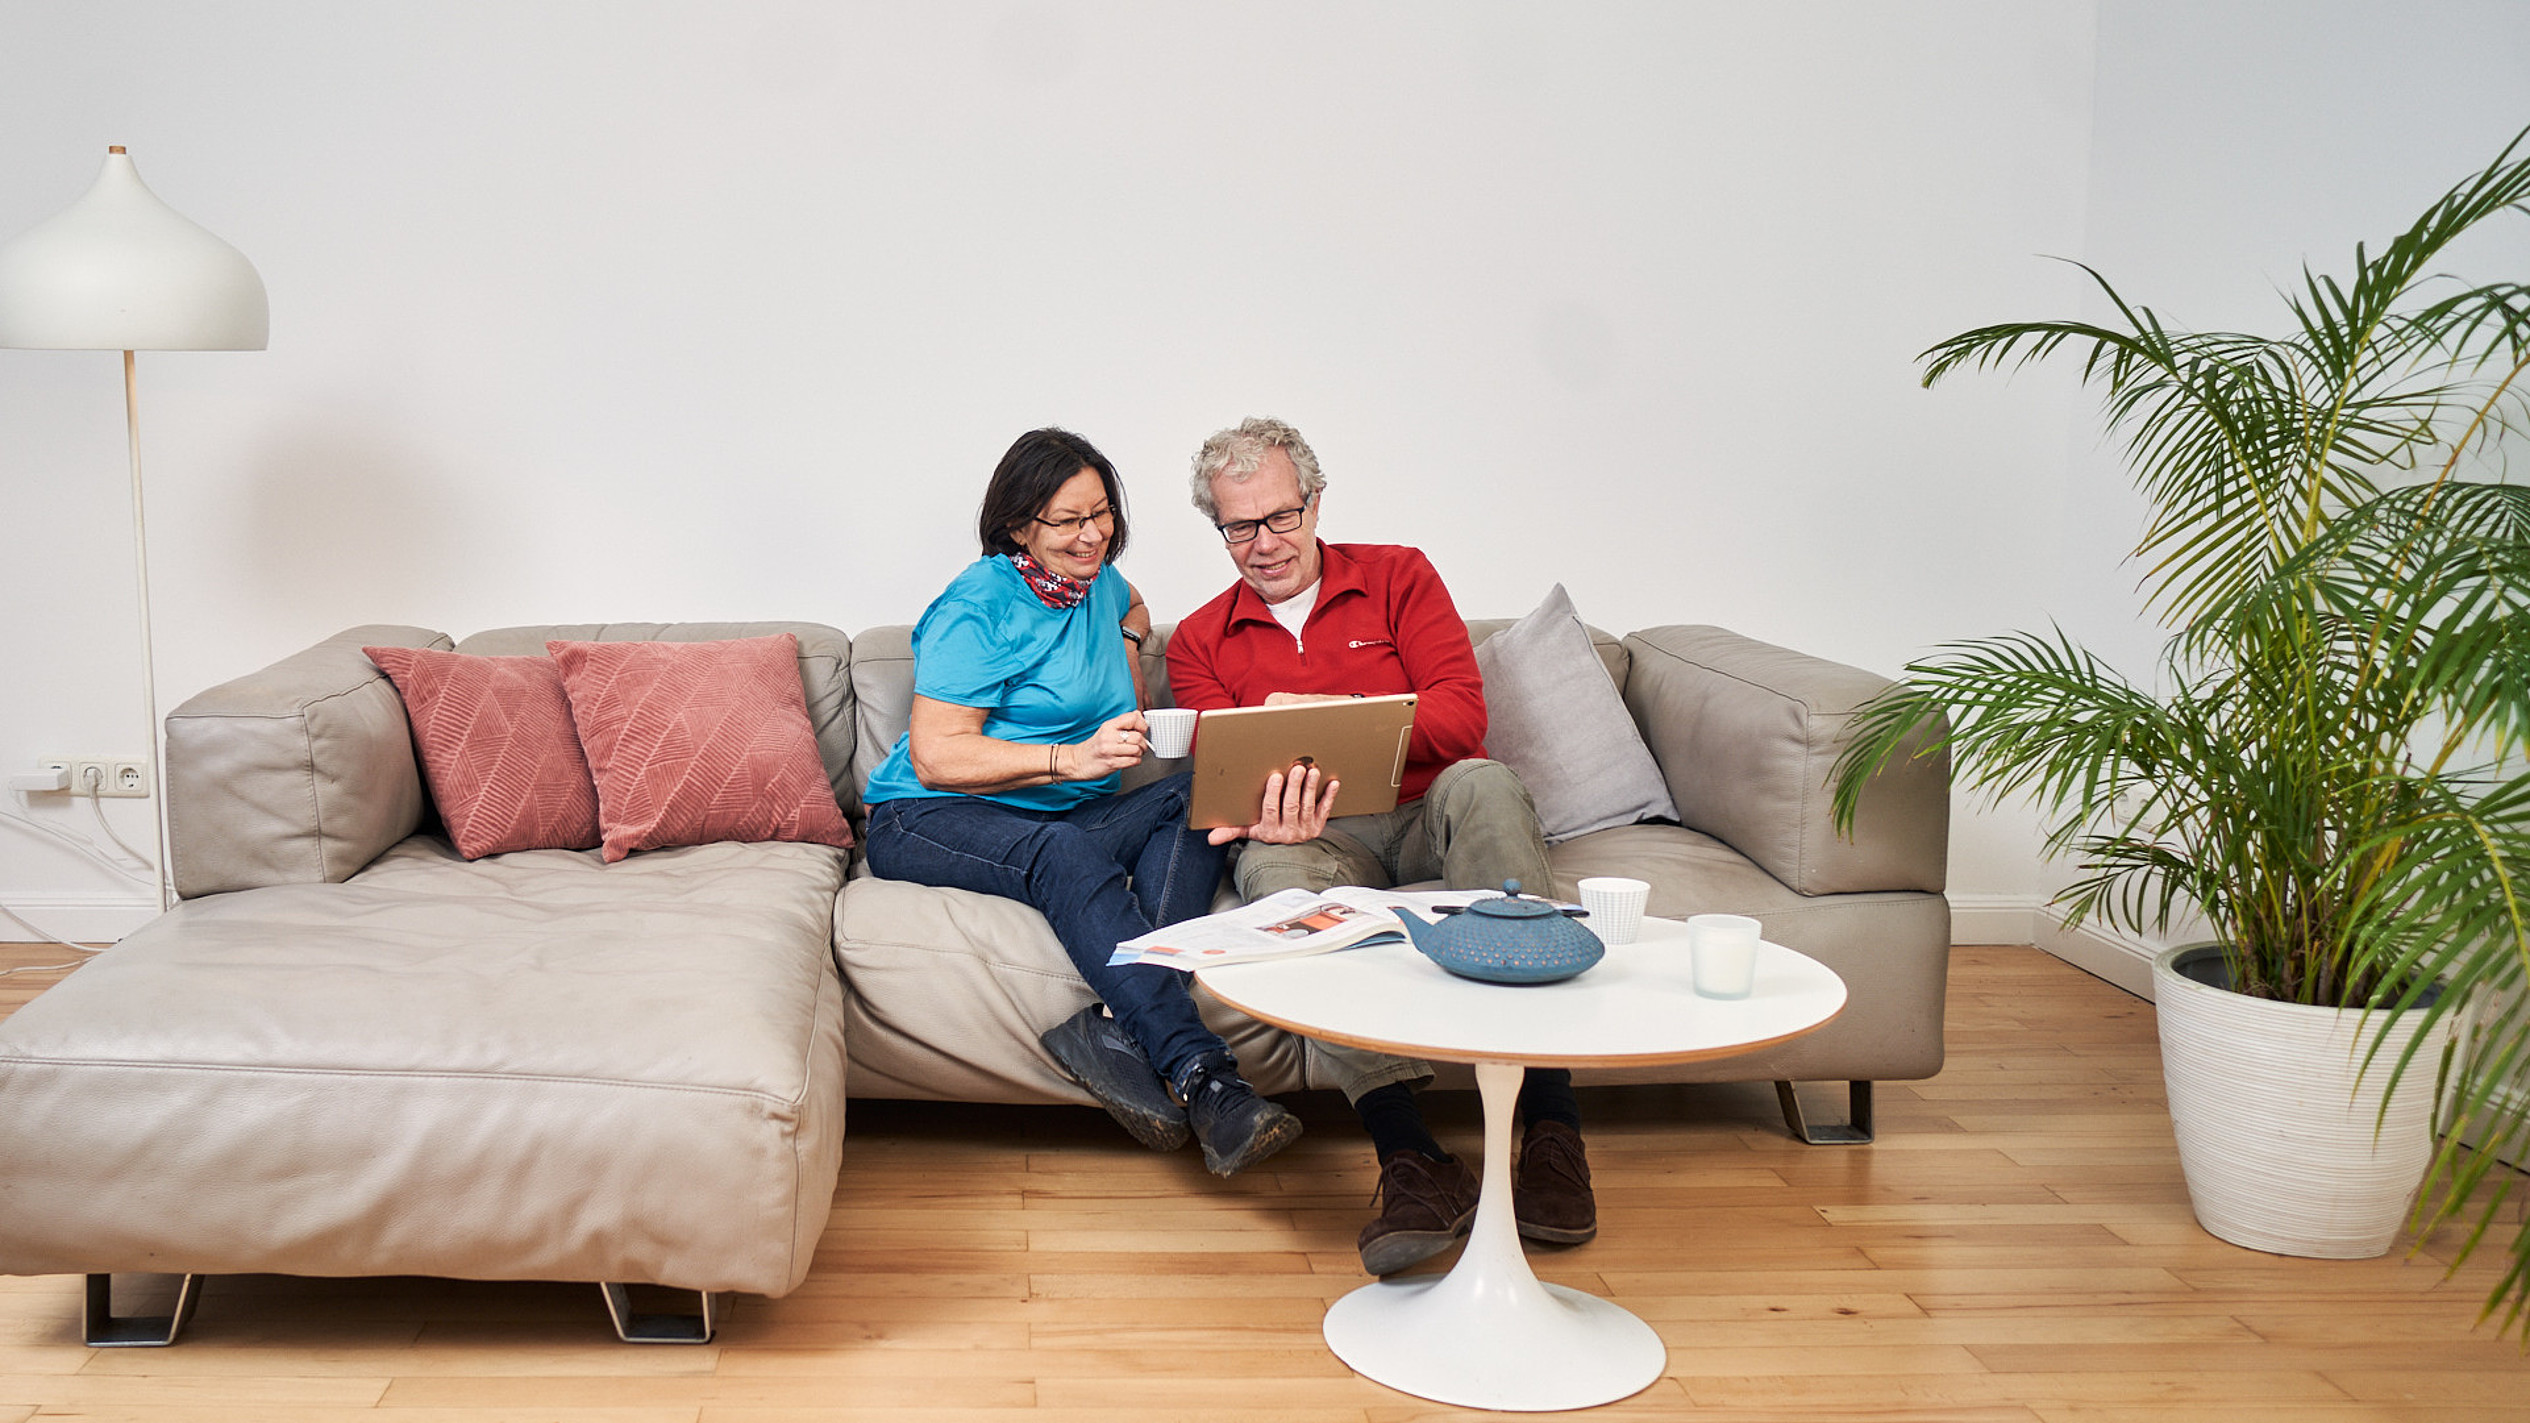 Ein attraktives Best-Ager Paar sitzt auf einem Sofa und schaut gemeinsam auf ein iPad.